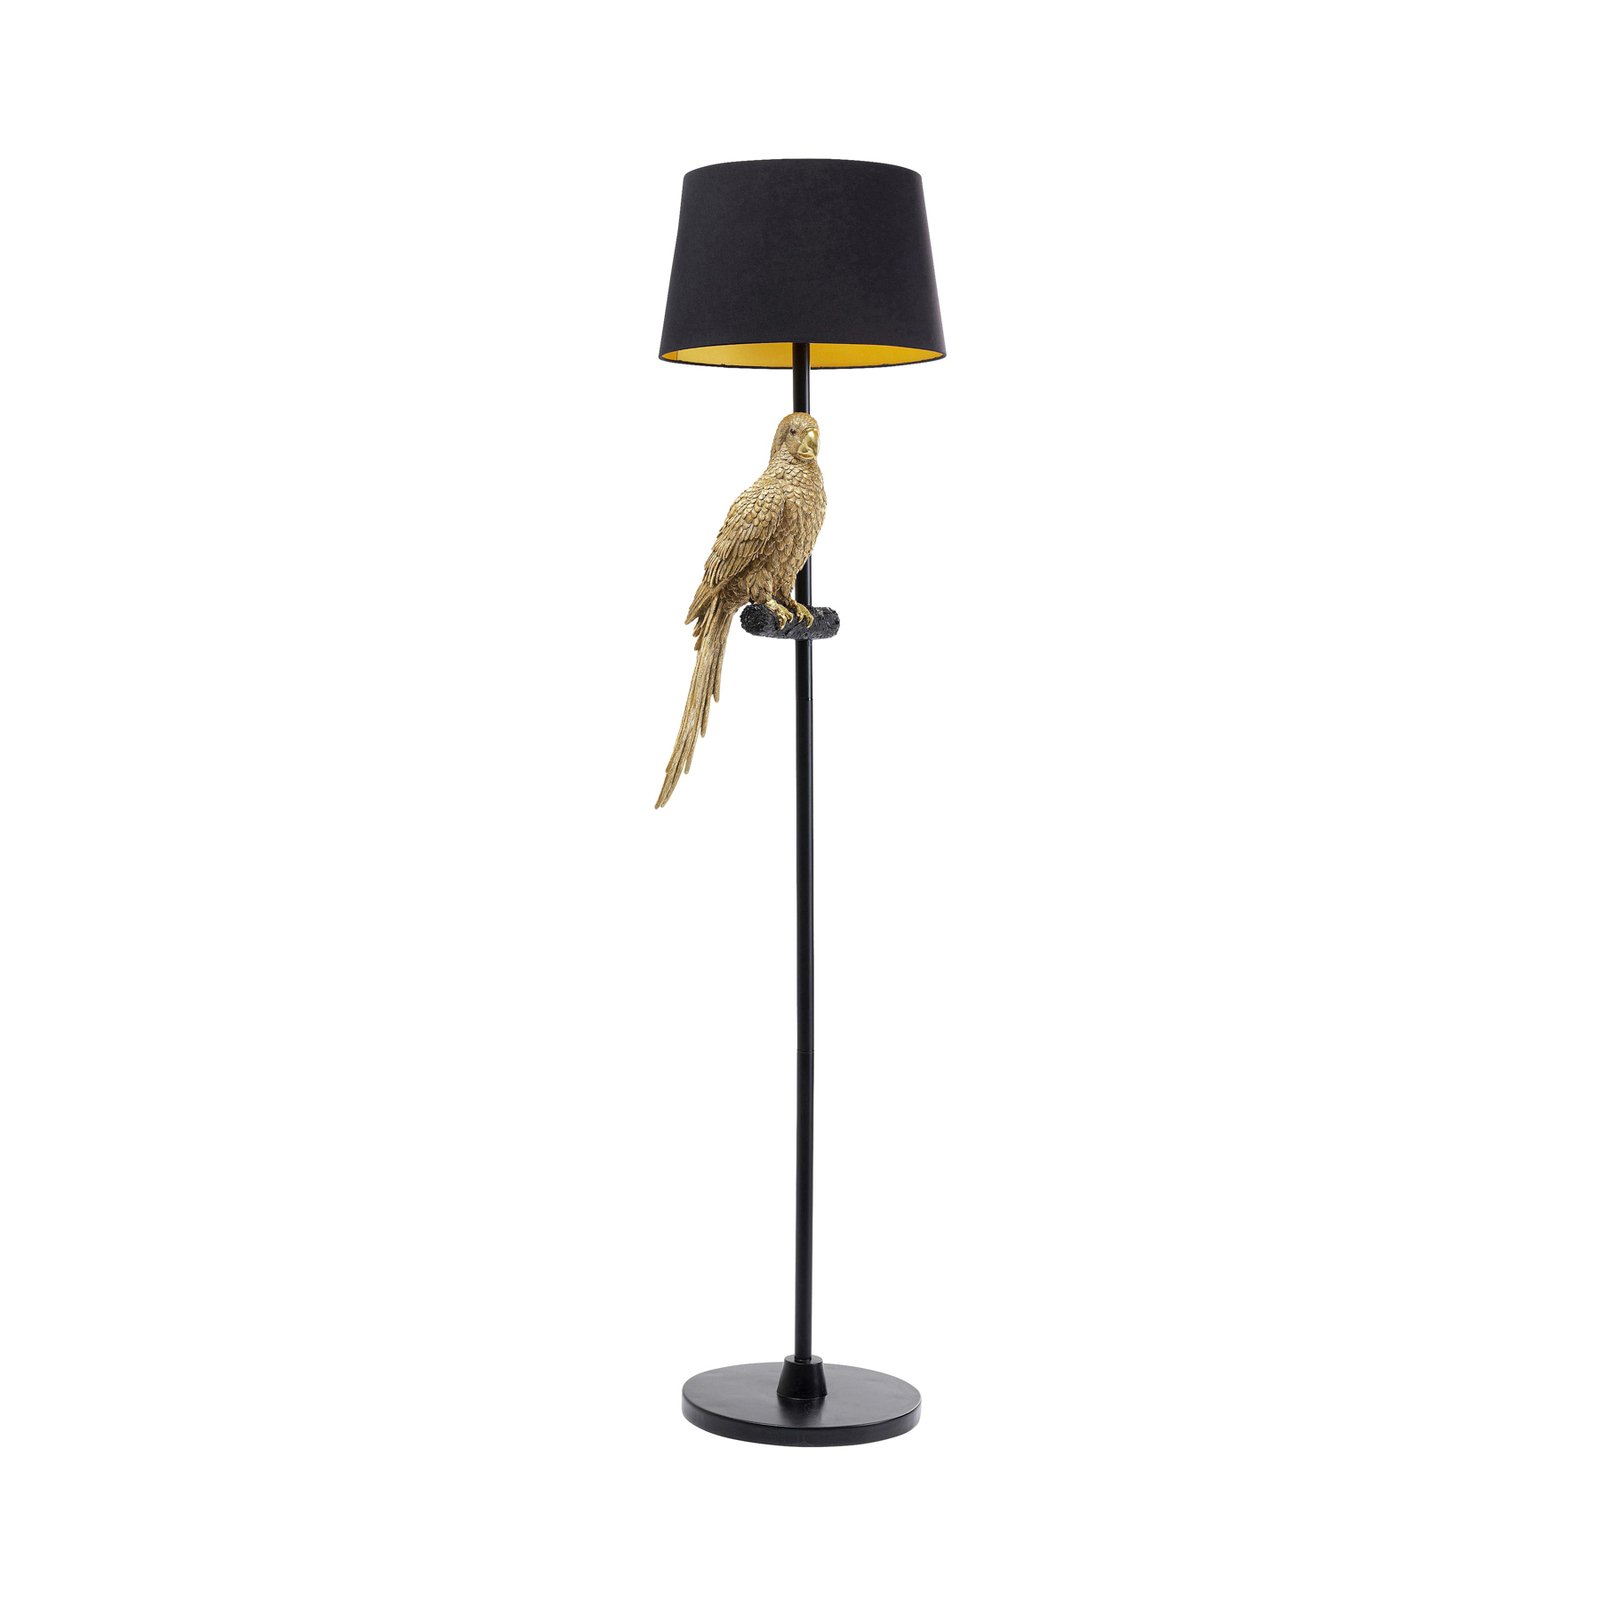 KARE Lampe sur pied Animal Parrot, textile noir, figurine dorée